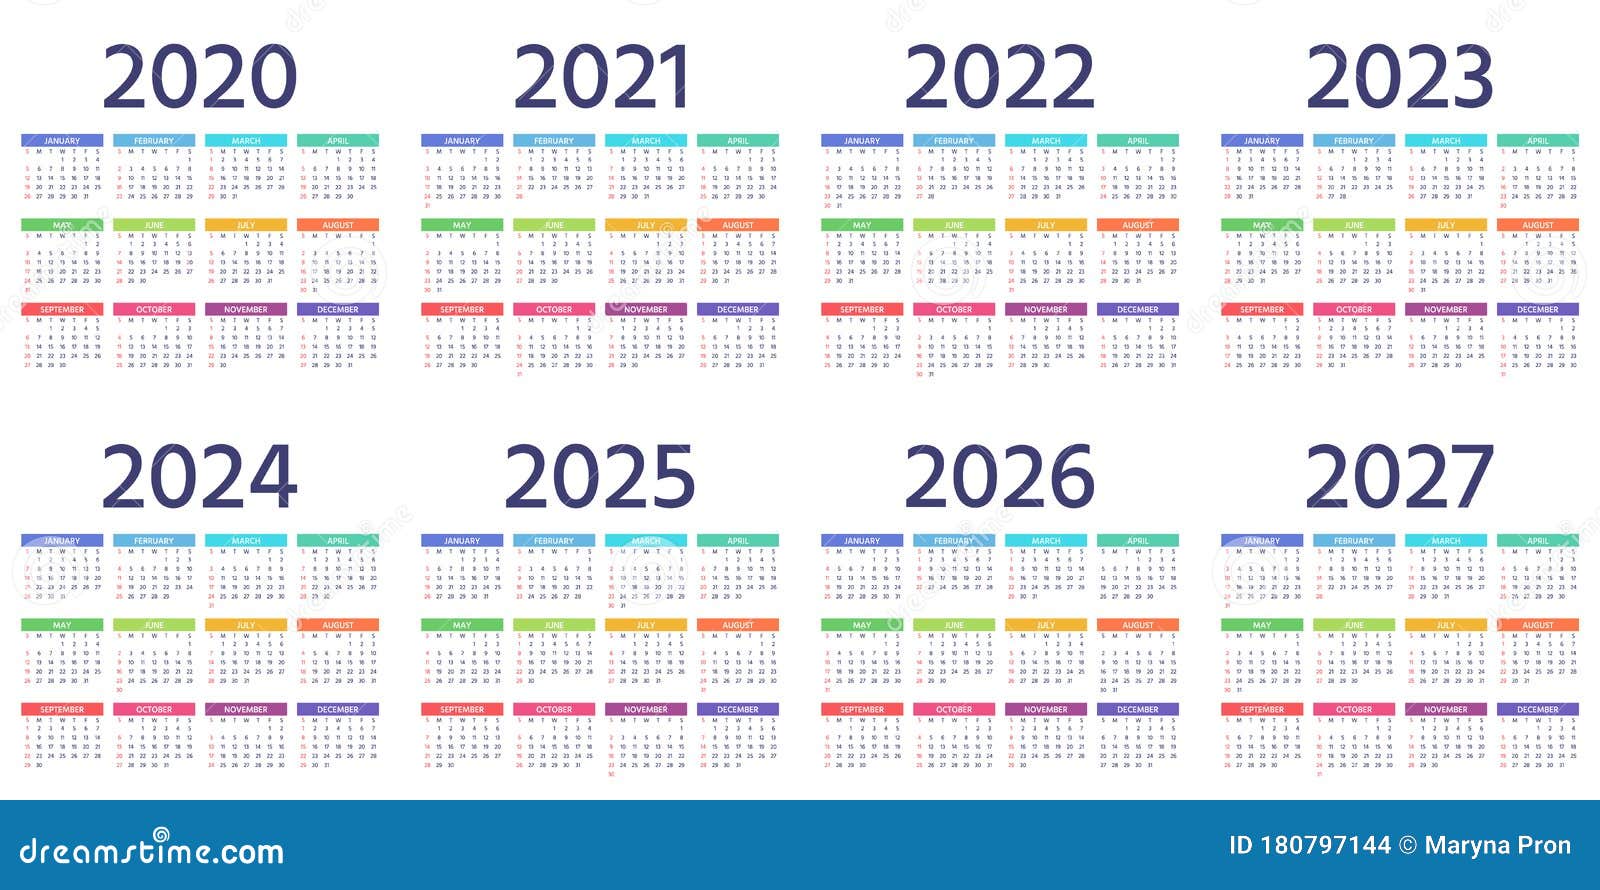 Сколько дней назад было 30 января 2020. Календарь 2022 2023 2024. Календарь 2023 2024 2025 2026. Календарь 2021-2022 год. Календарь 2021-2023 года.